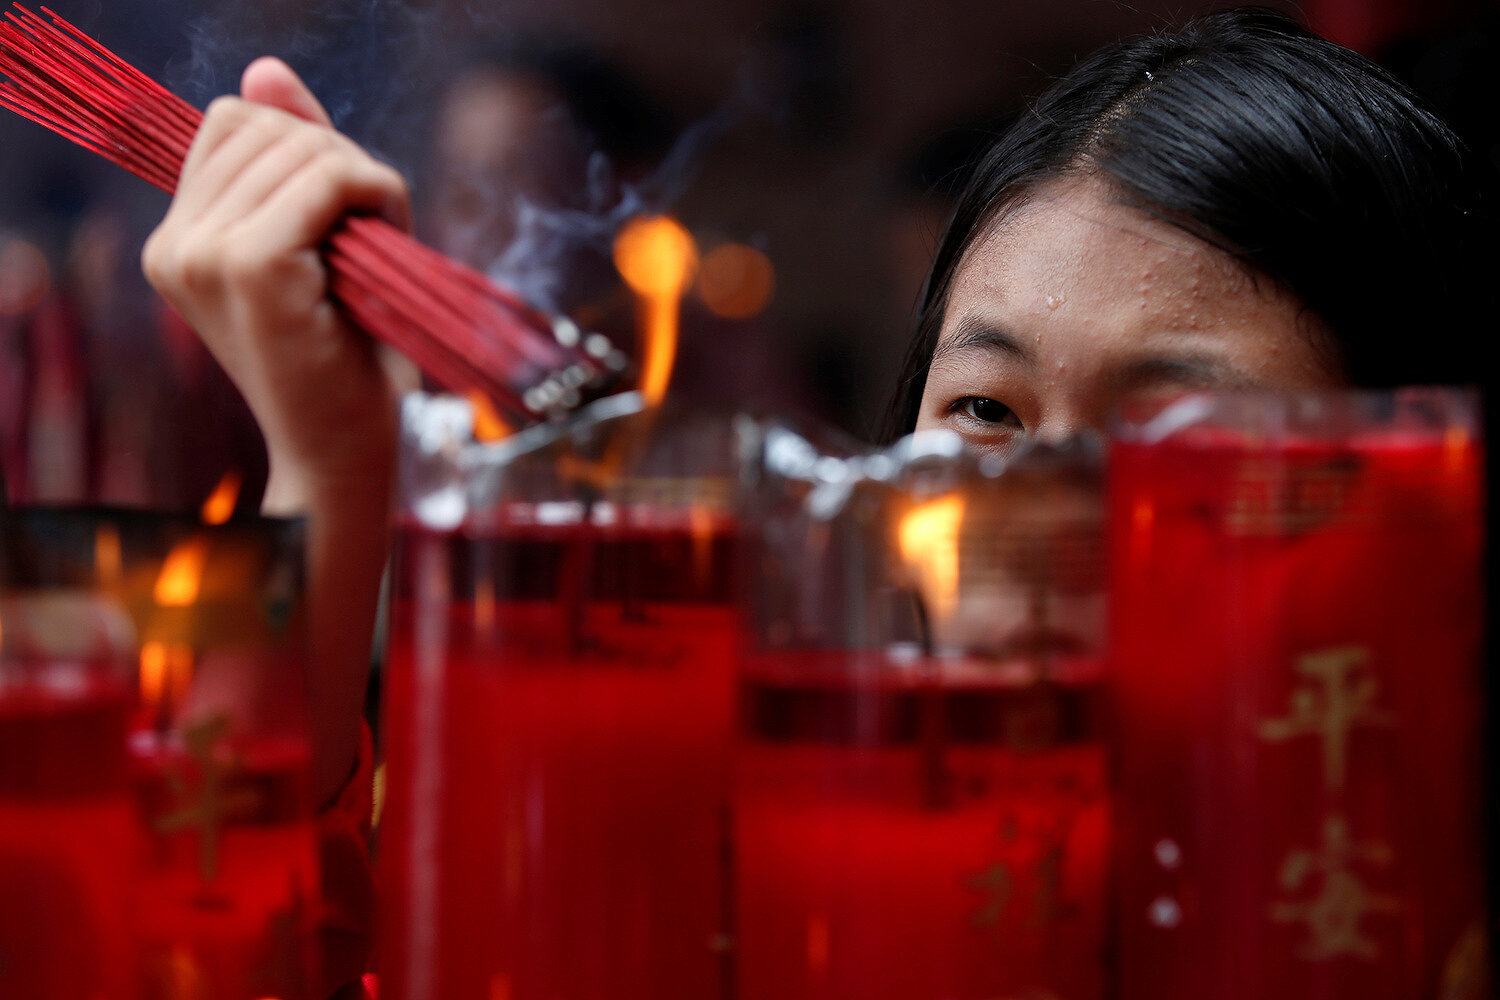 <p>Посетительница храма в Джакарте (Индонезия) зажигает ароматические палочки во время молитвы в честь Нового года</p>

<p>&nbsp;</p>